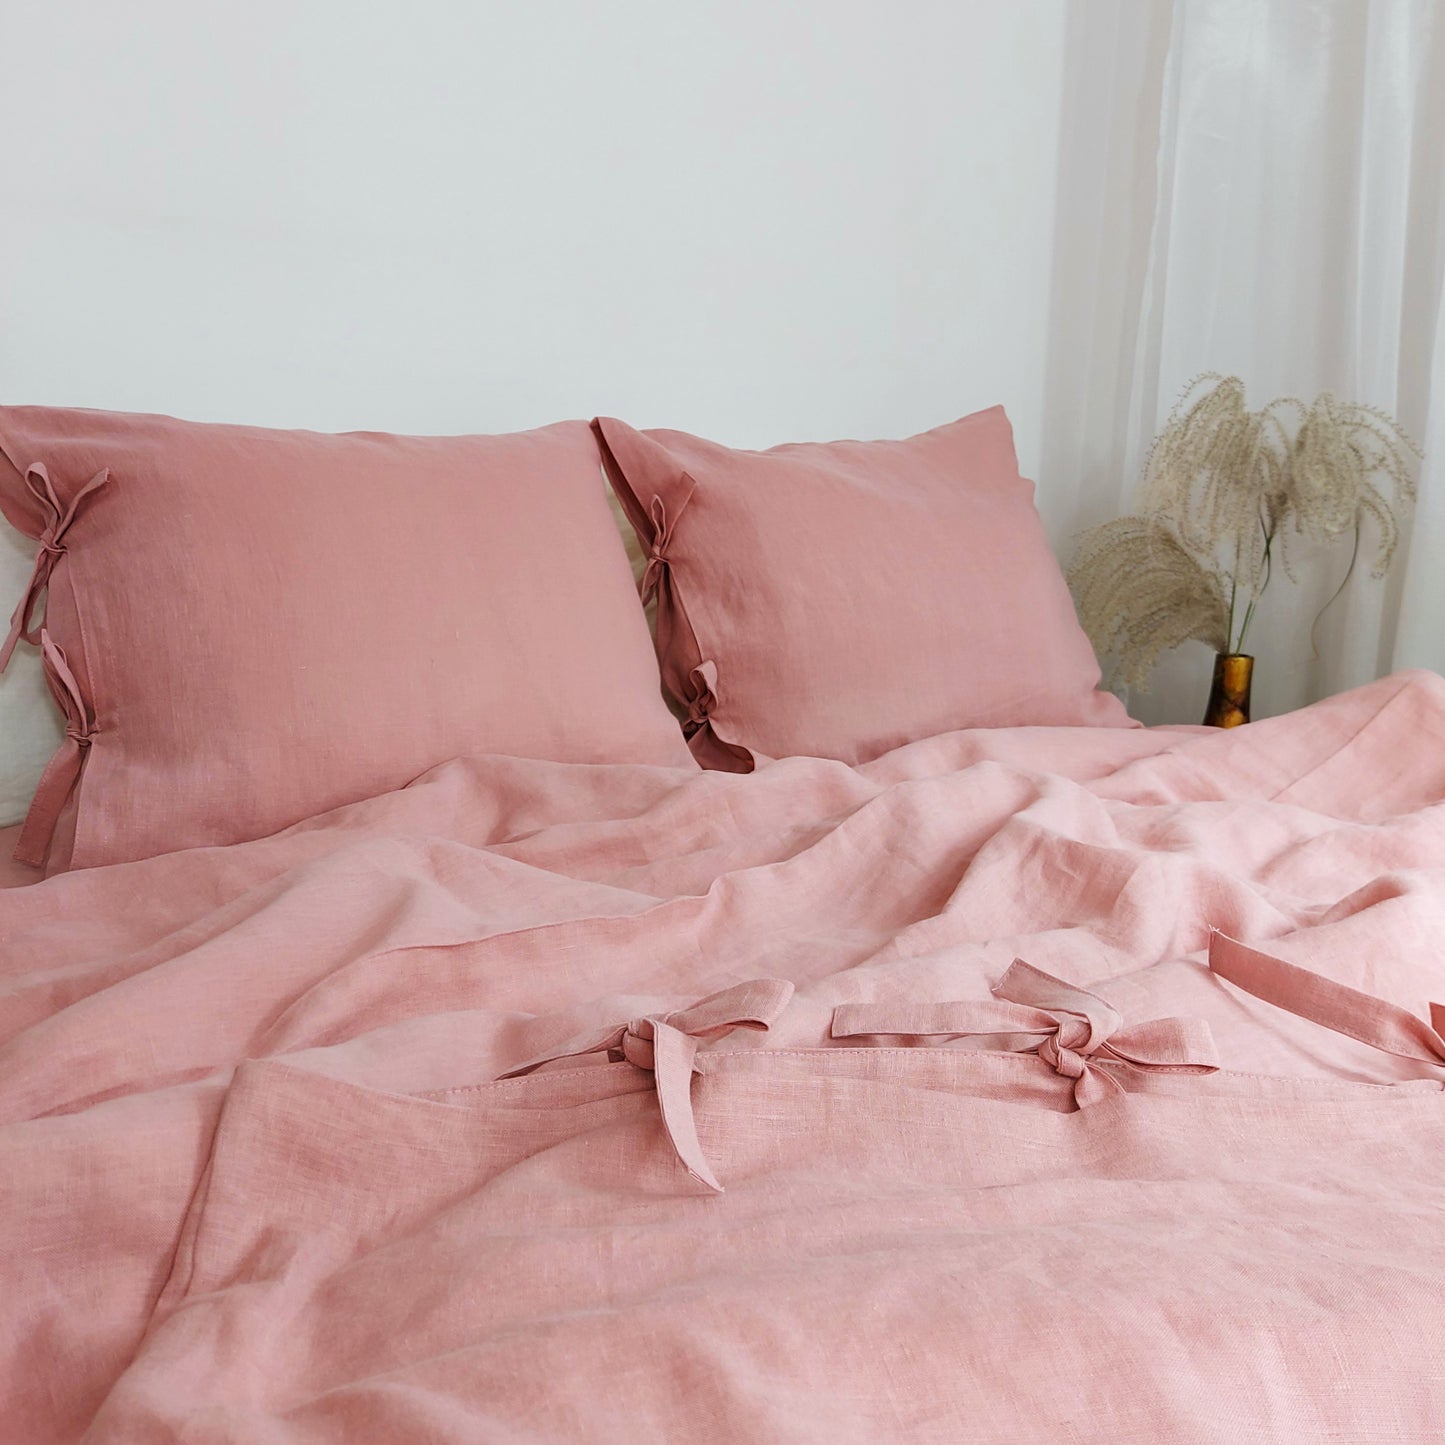 Linen Duvet Cover in Vintage Pink Color, Stonewashed Linen